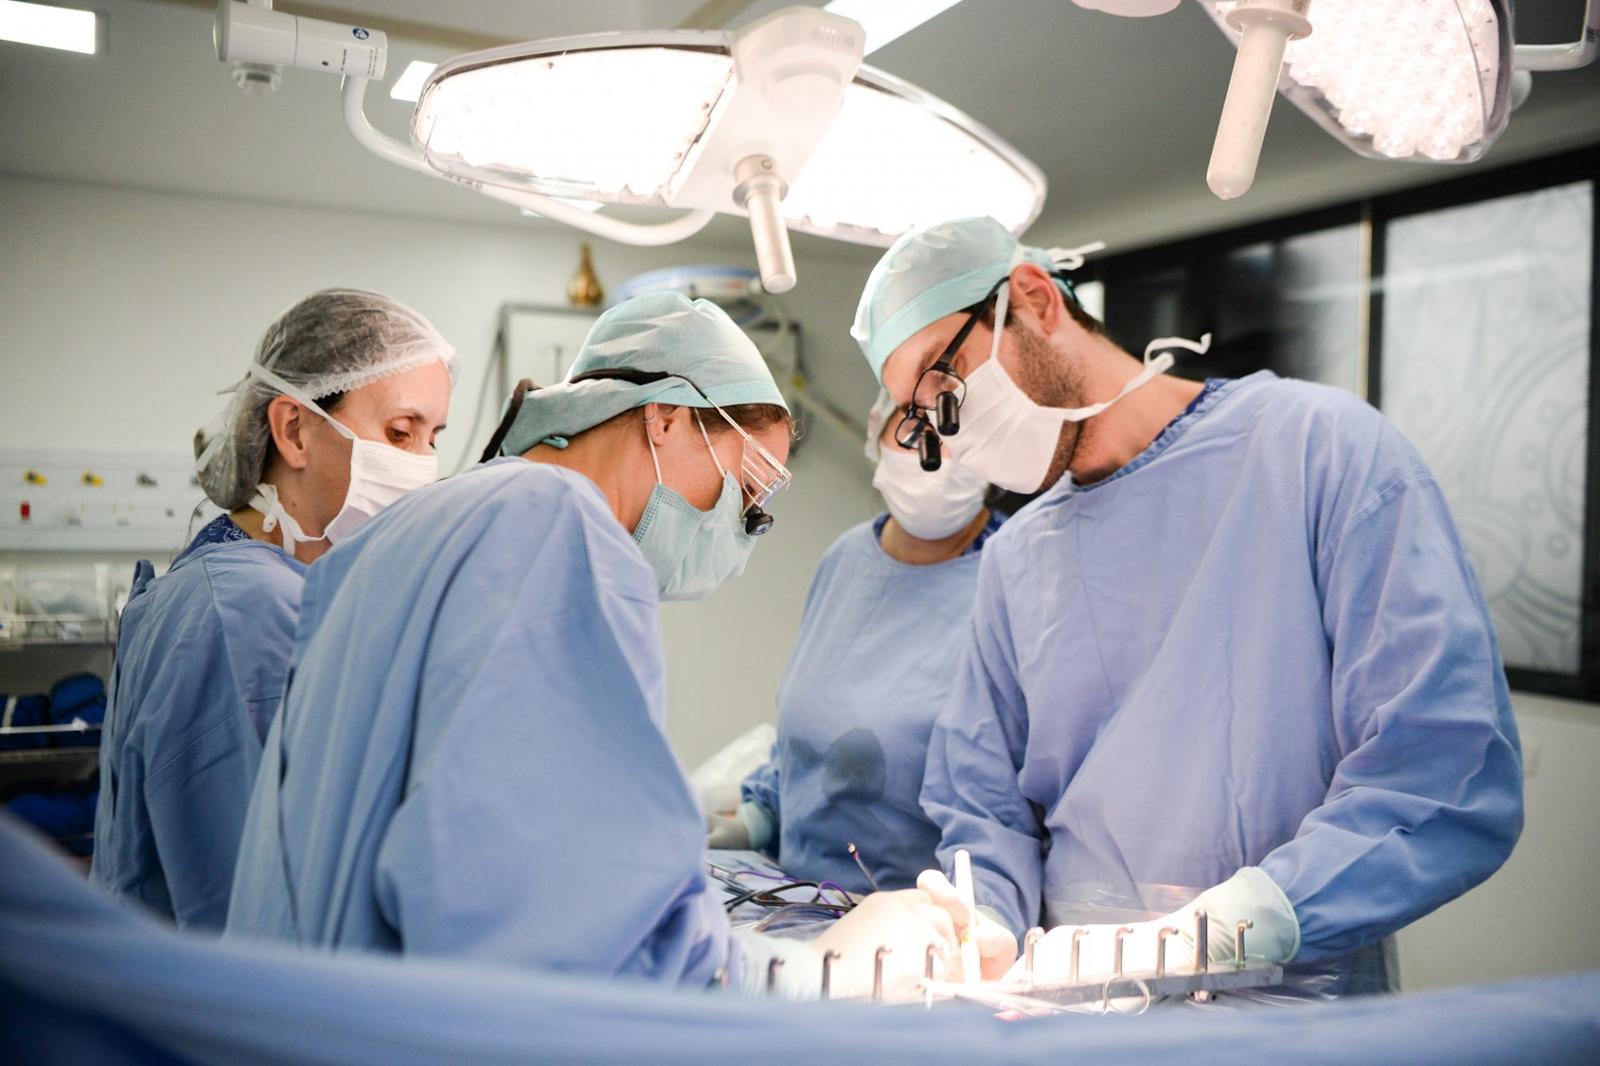 Maior hospital exclusivamente pediátrico do país chega à marca de 50 transplantes de fígado